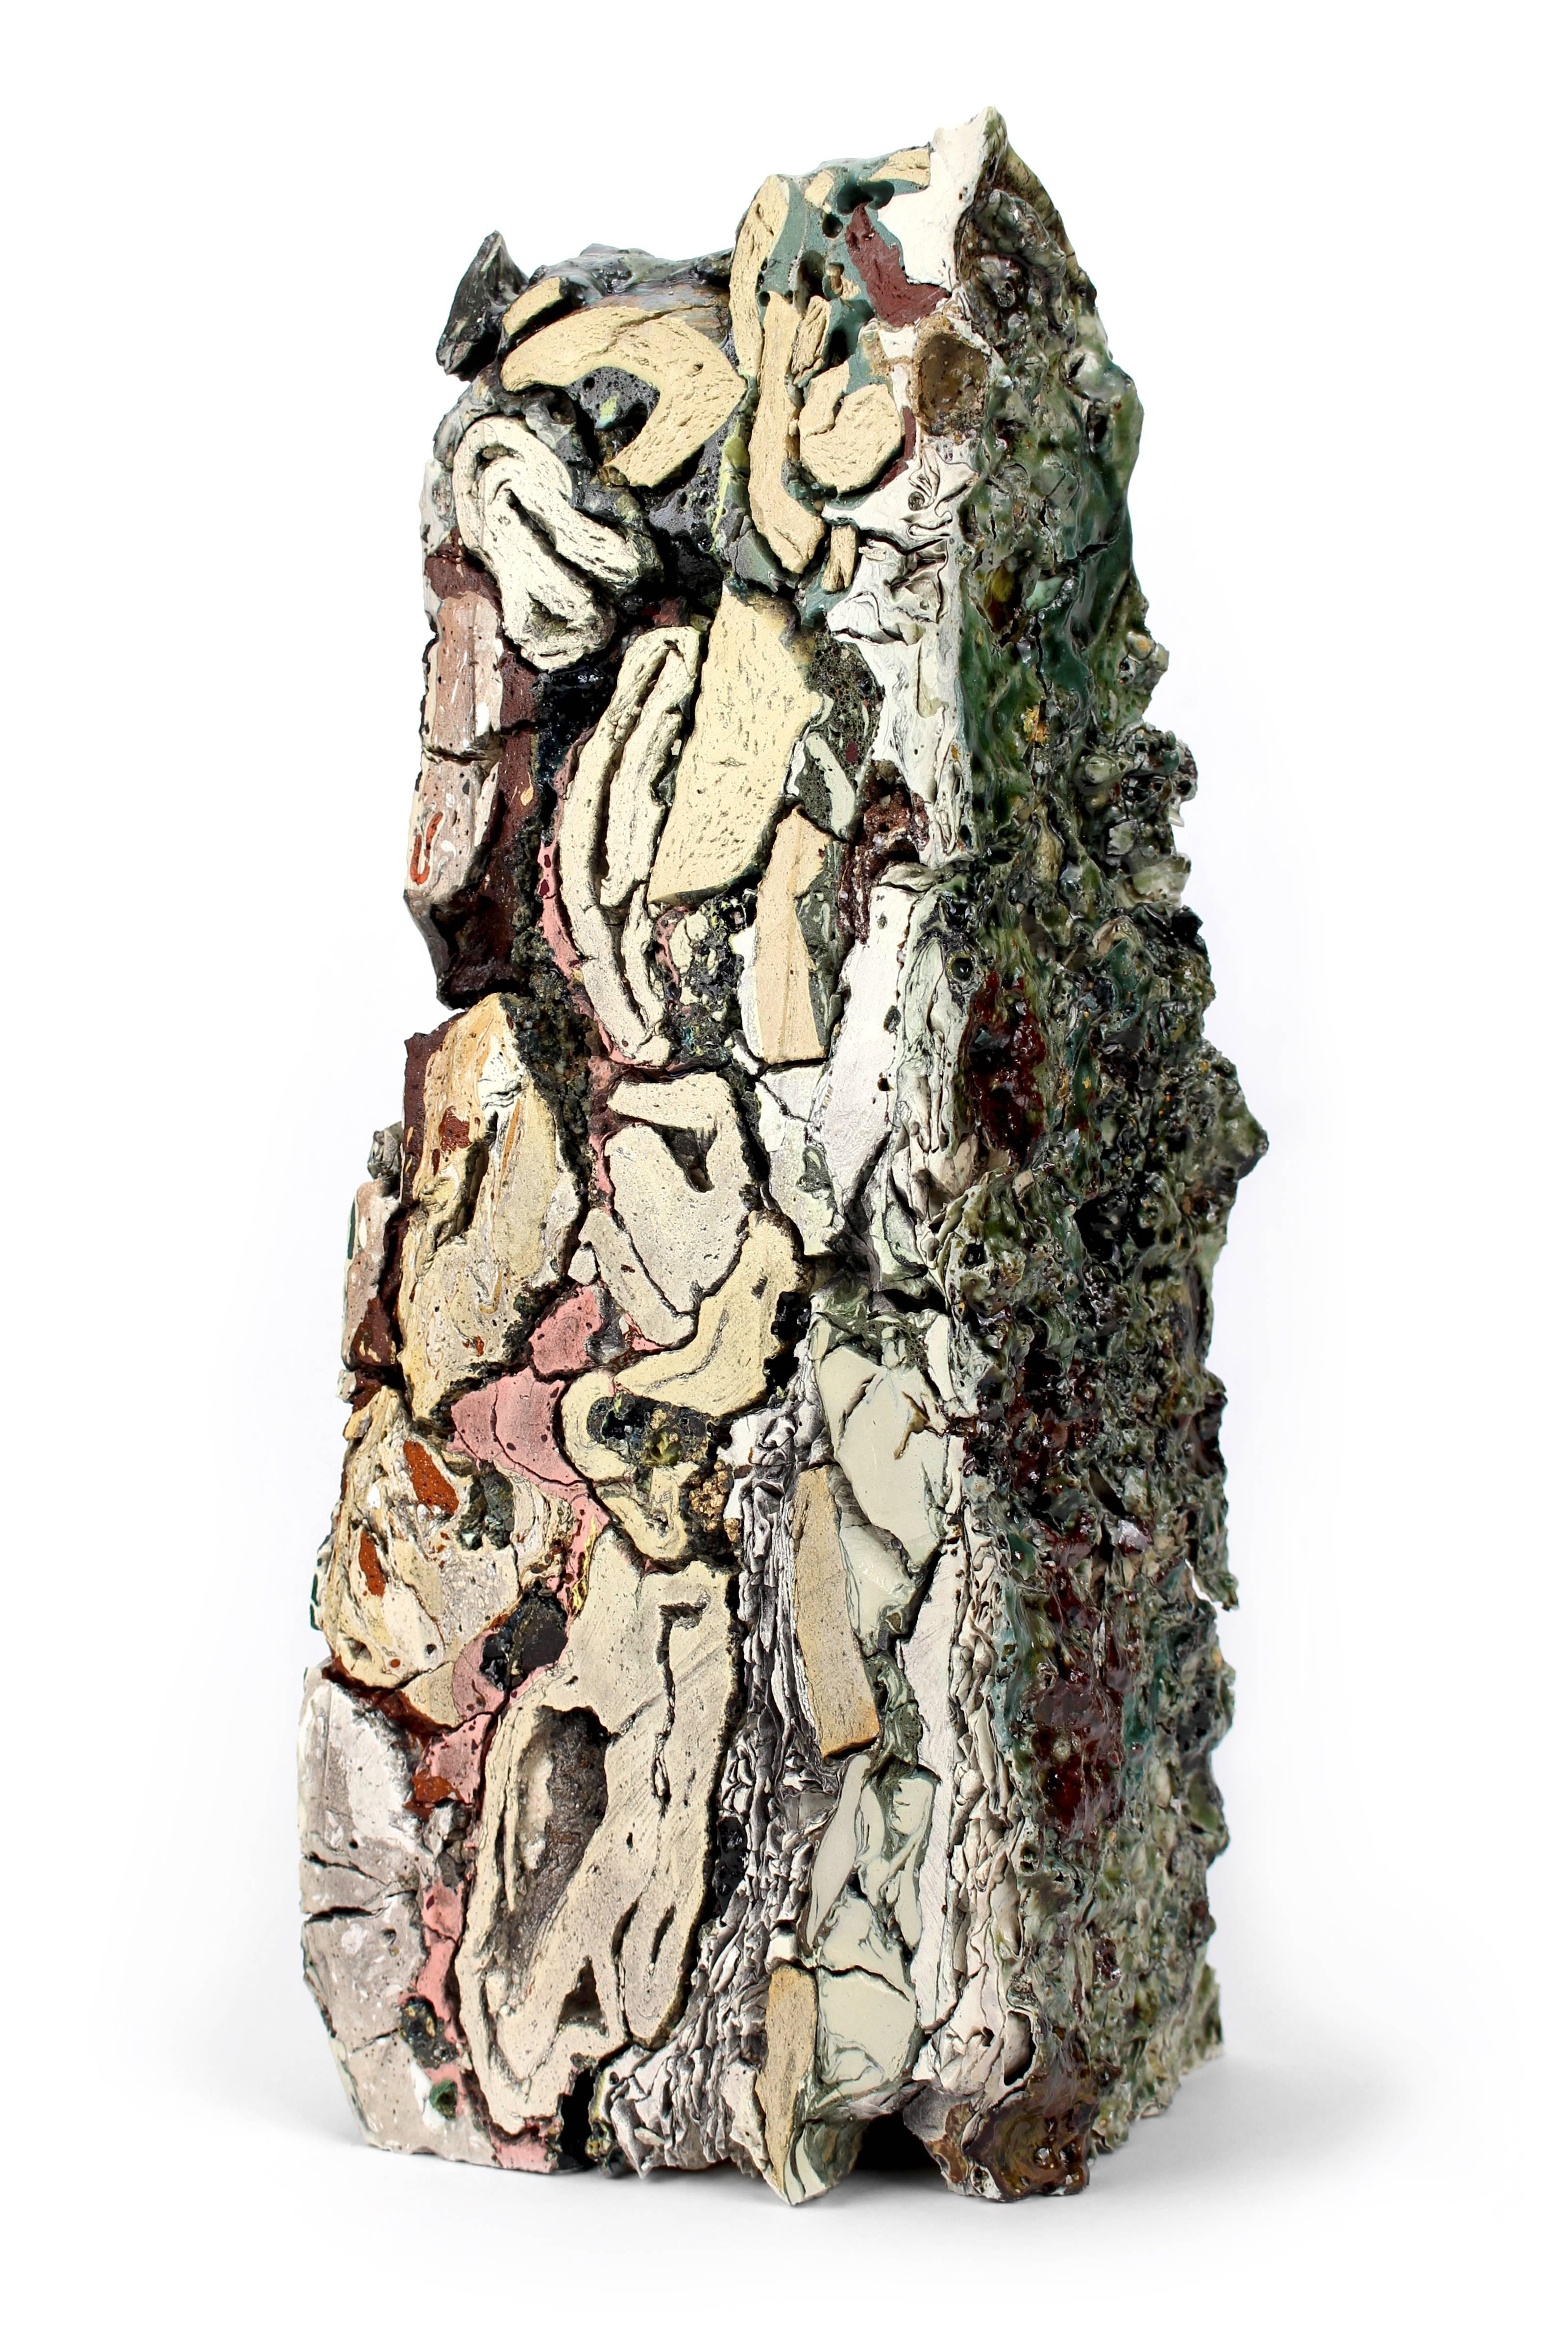 Jonathan Mess Abstract Sculpture - Landfill No.50